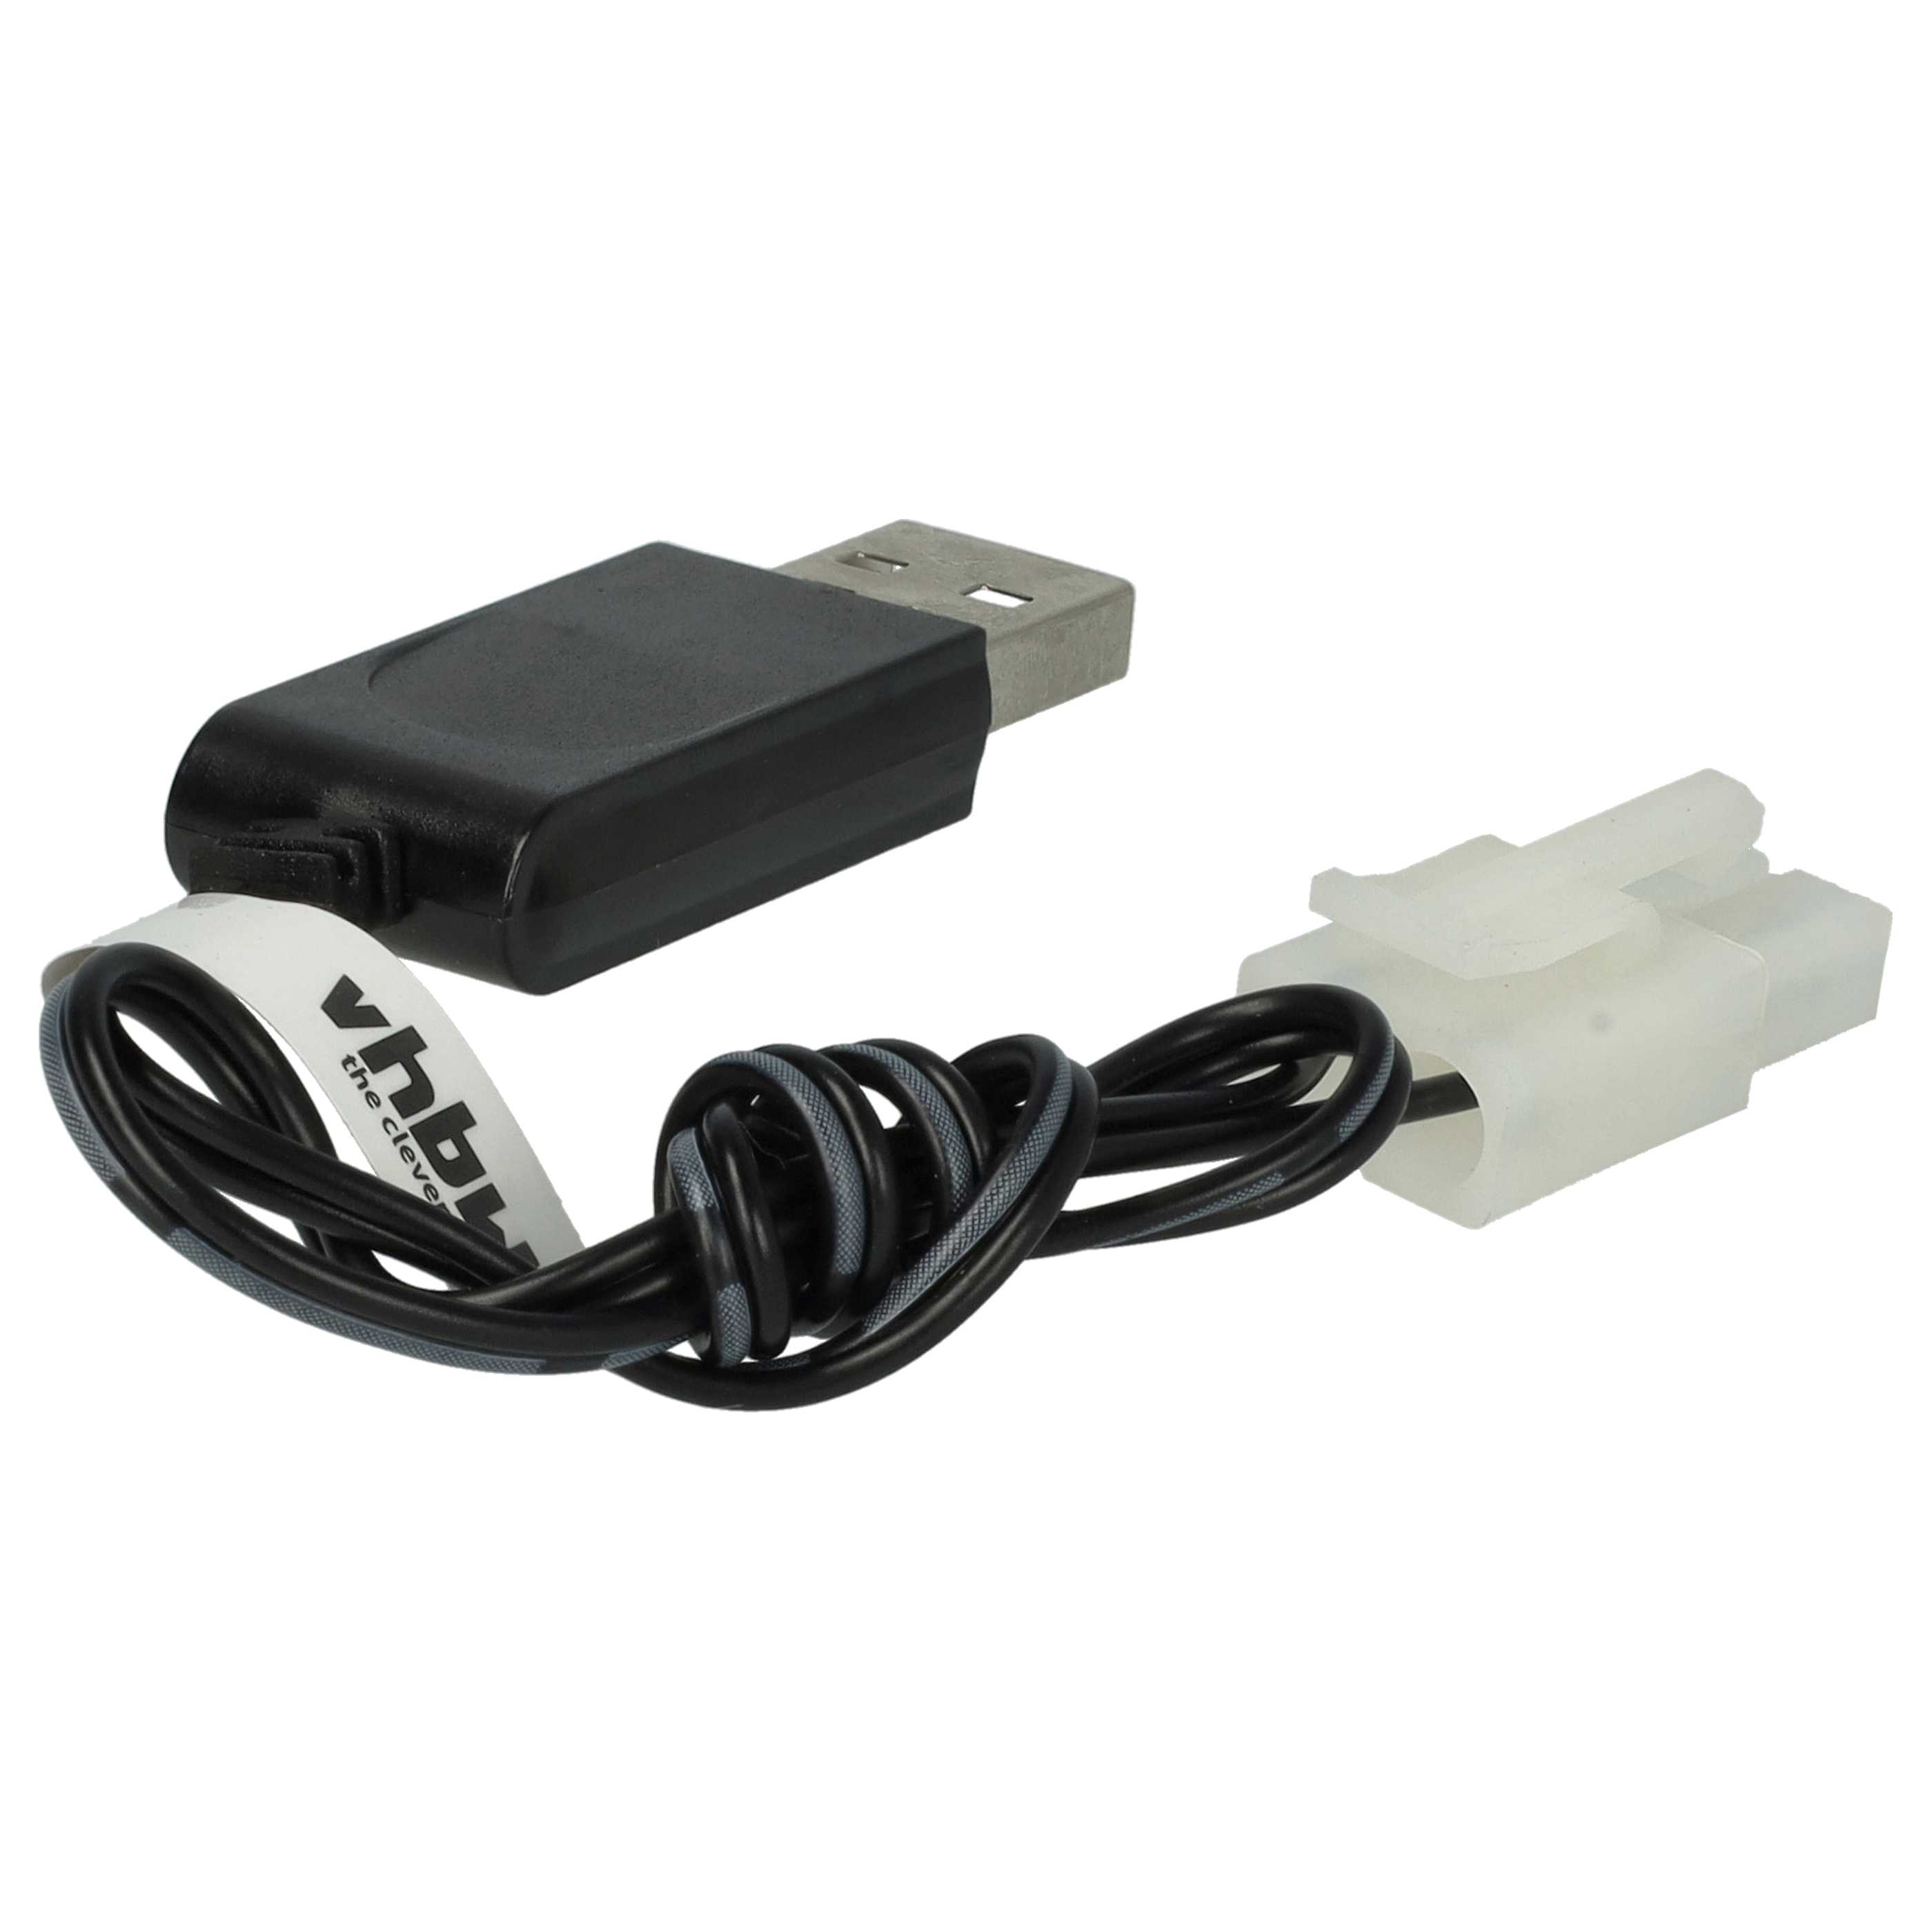 USB-Ladekabel passend für RC-Akkus mit Tamiya-Anschluss, RC-Modellbau Akkupacks - 60cm 9,6V